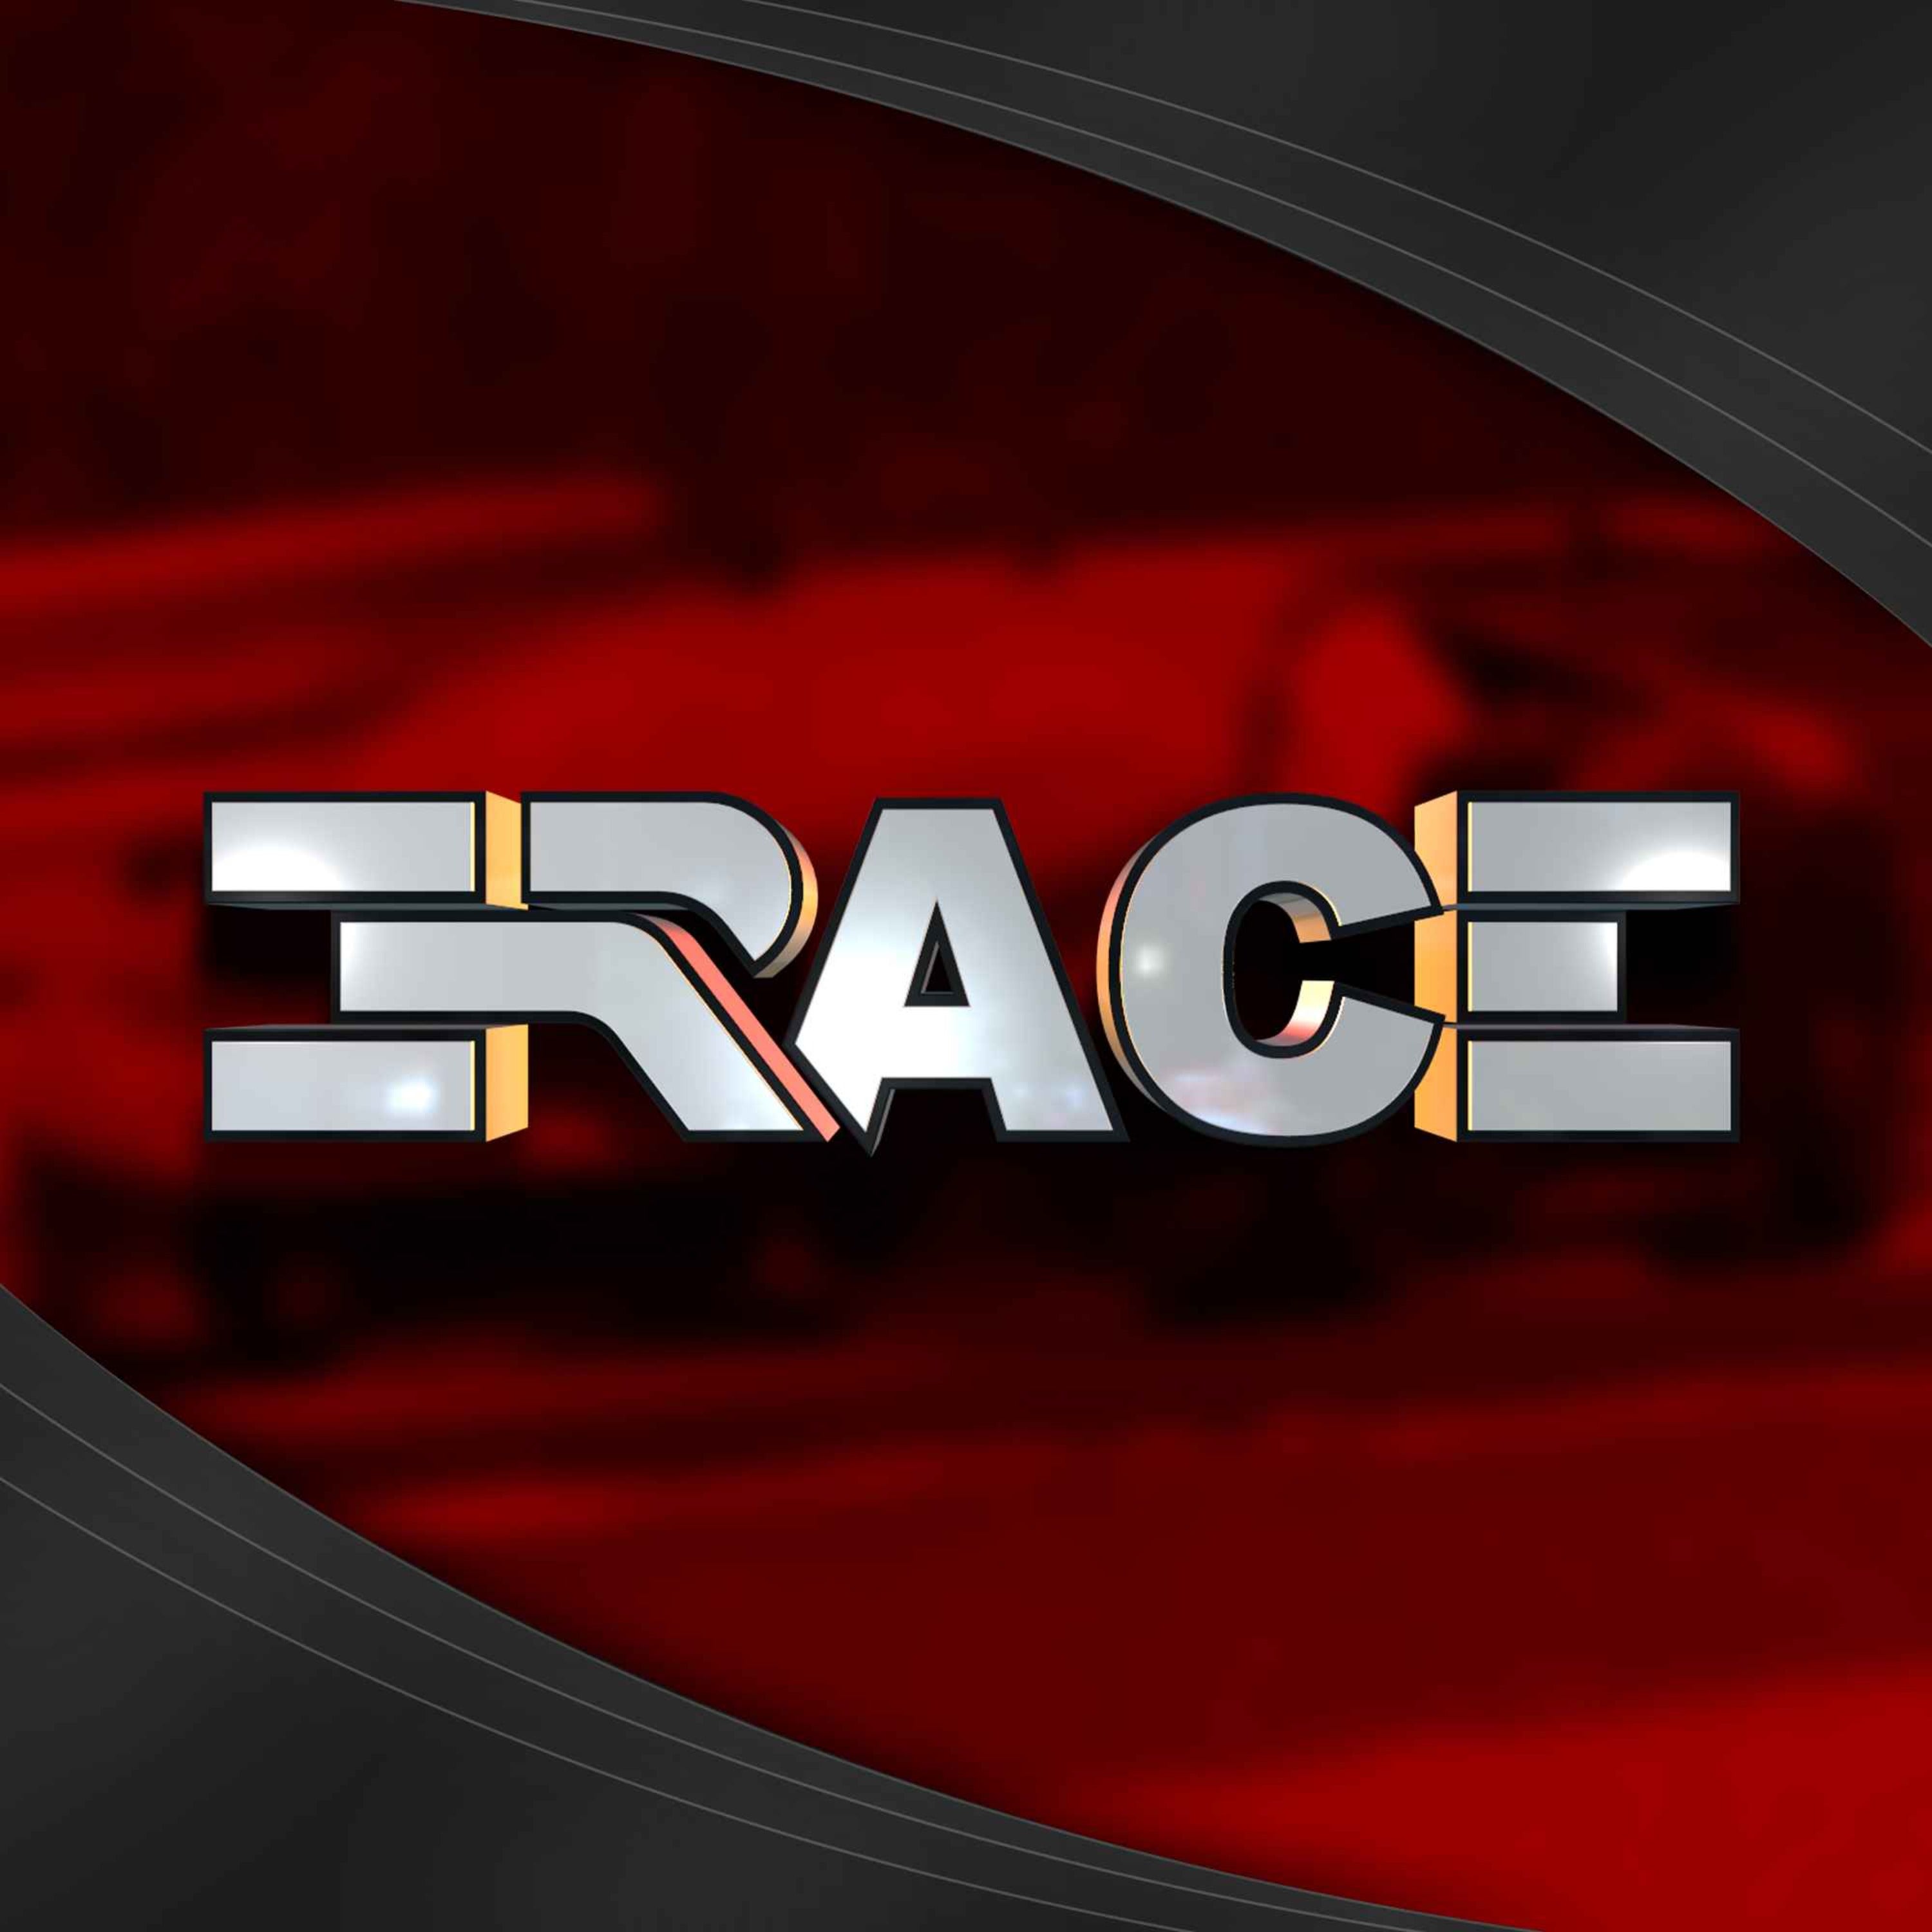 E-Race S02E06